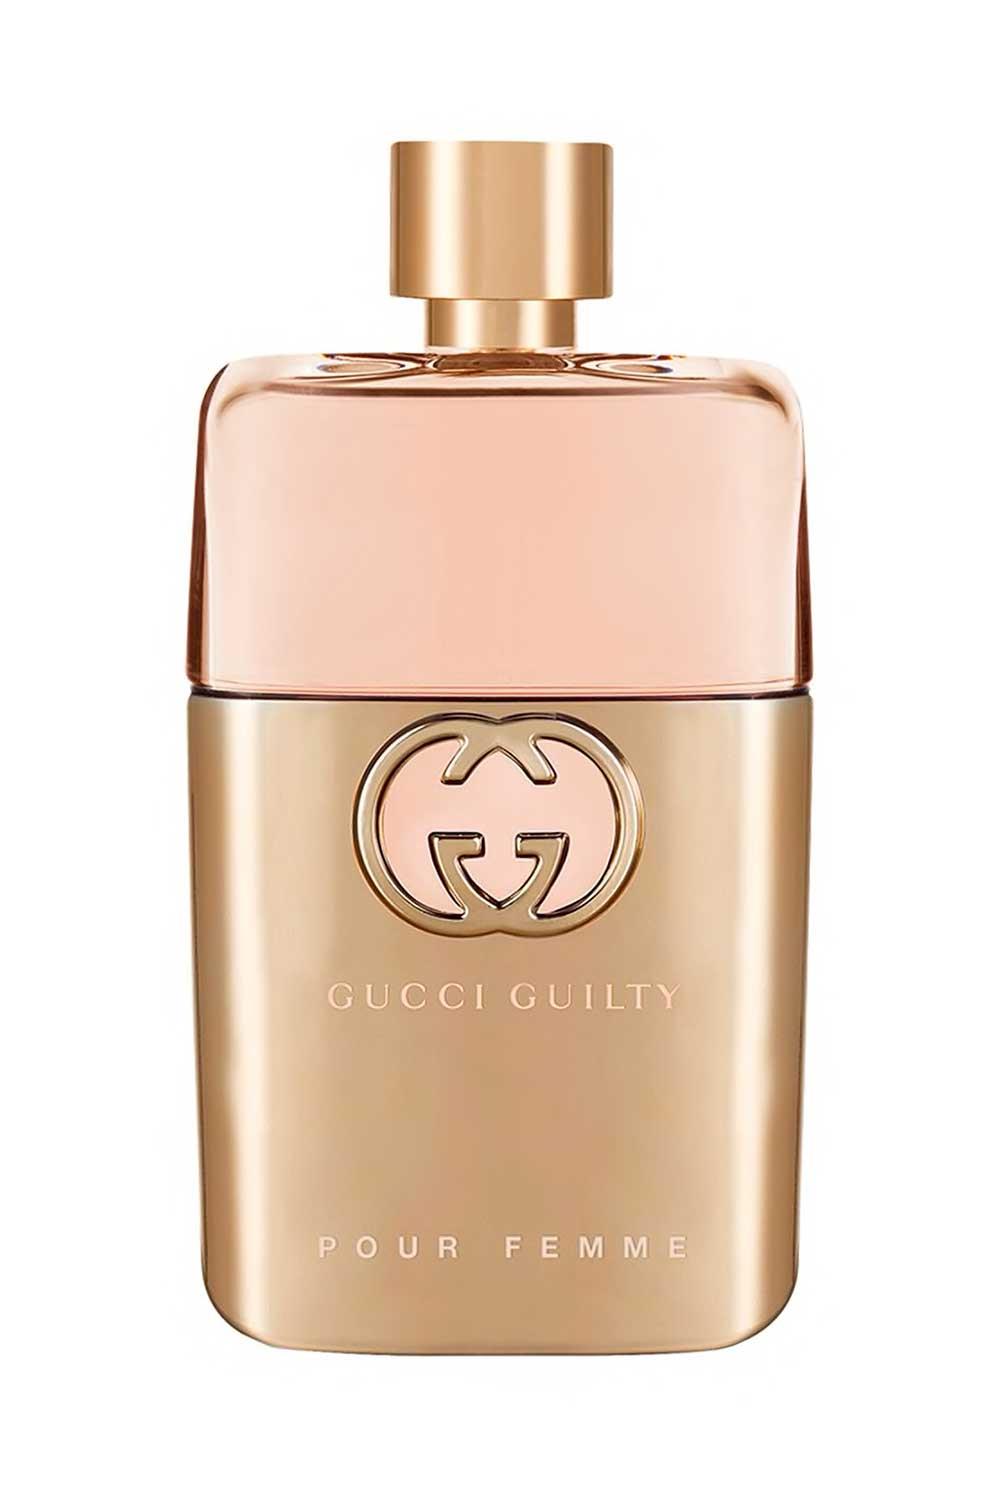 GGuci. Eau de Parfum Gucci Guilty for Her Gucci